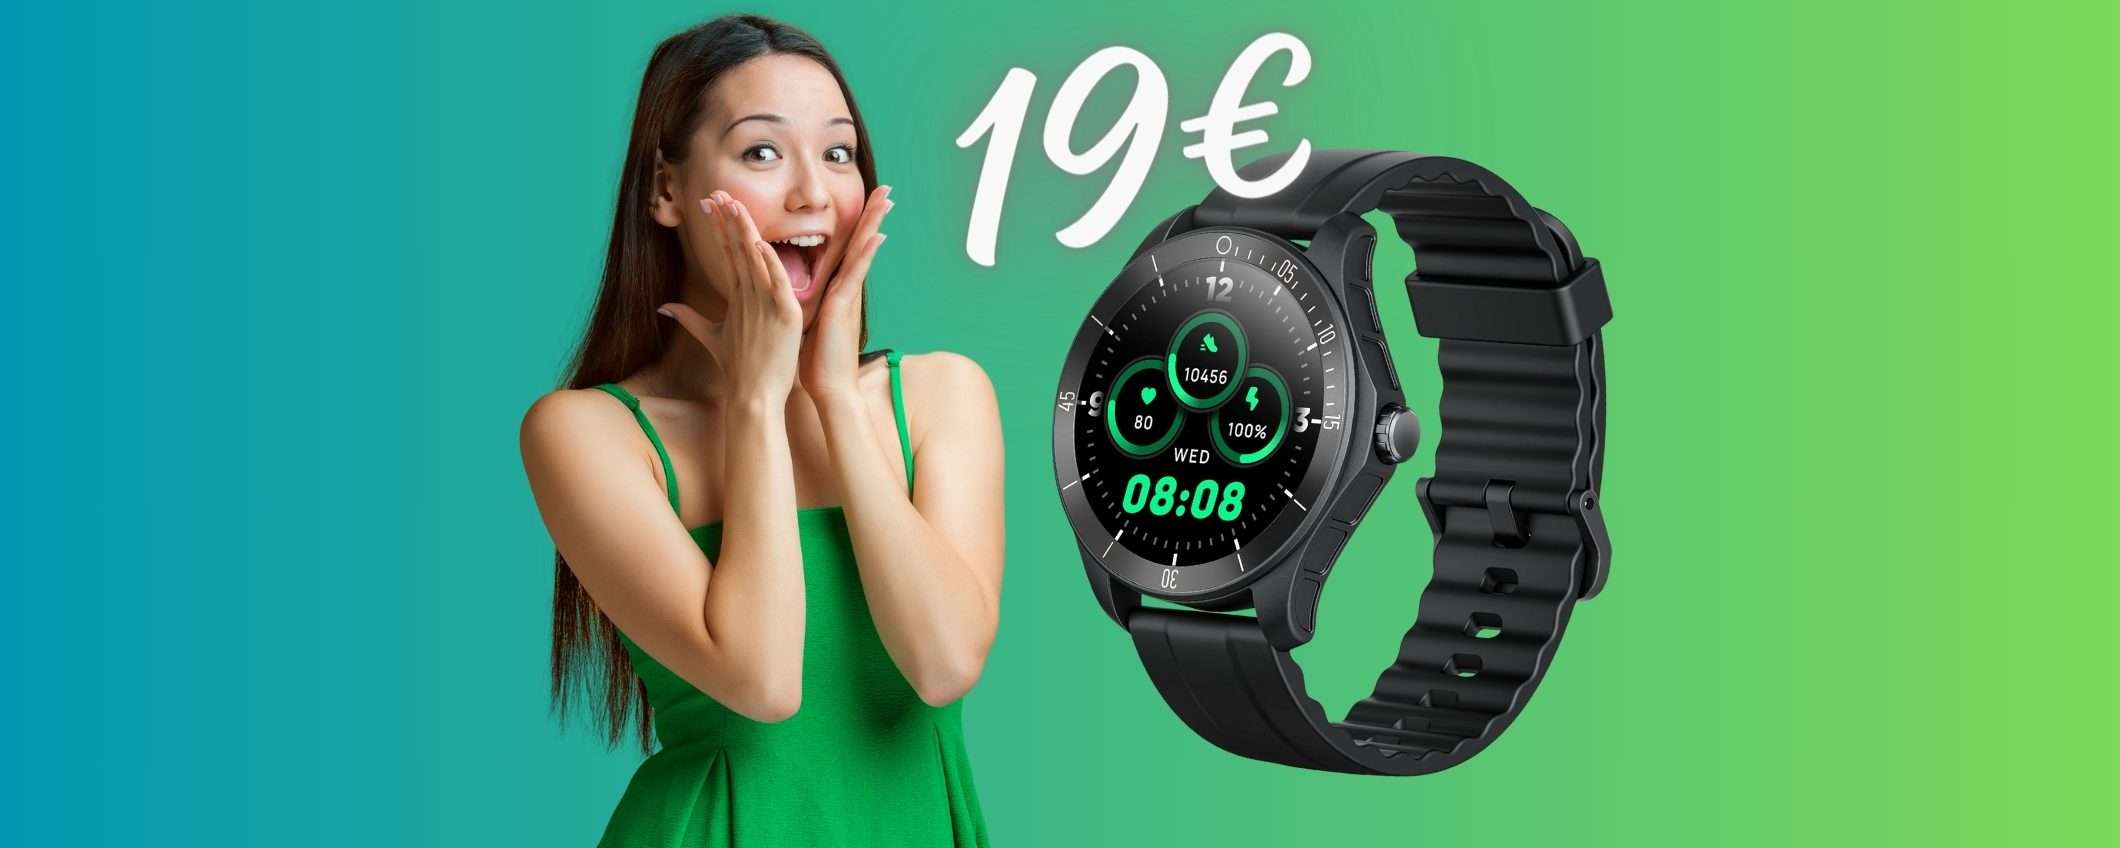 Smartwatch a MENO di 20€ e rispondi alle chiamate dal polso (Amazon)